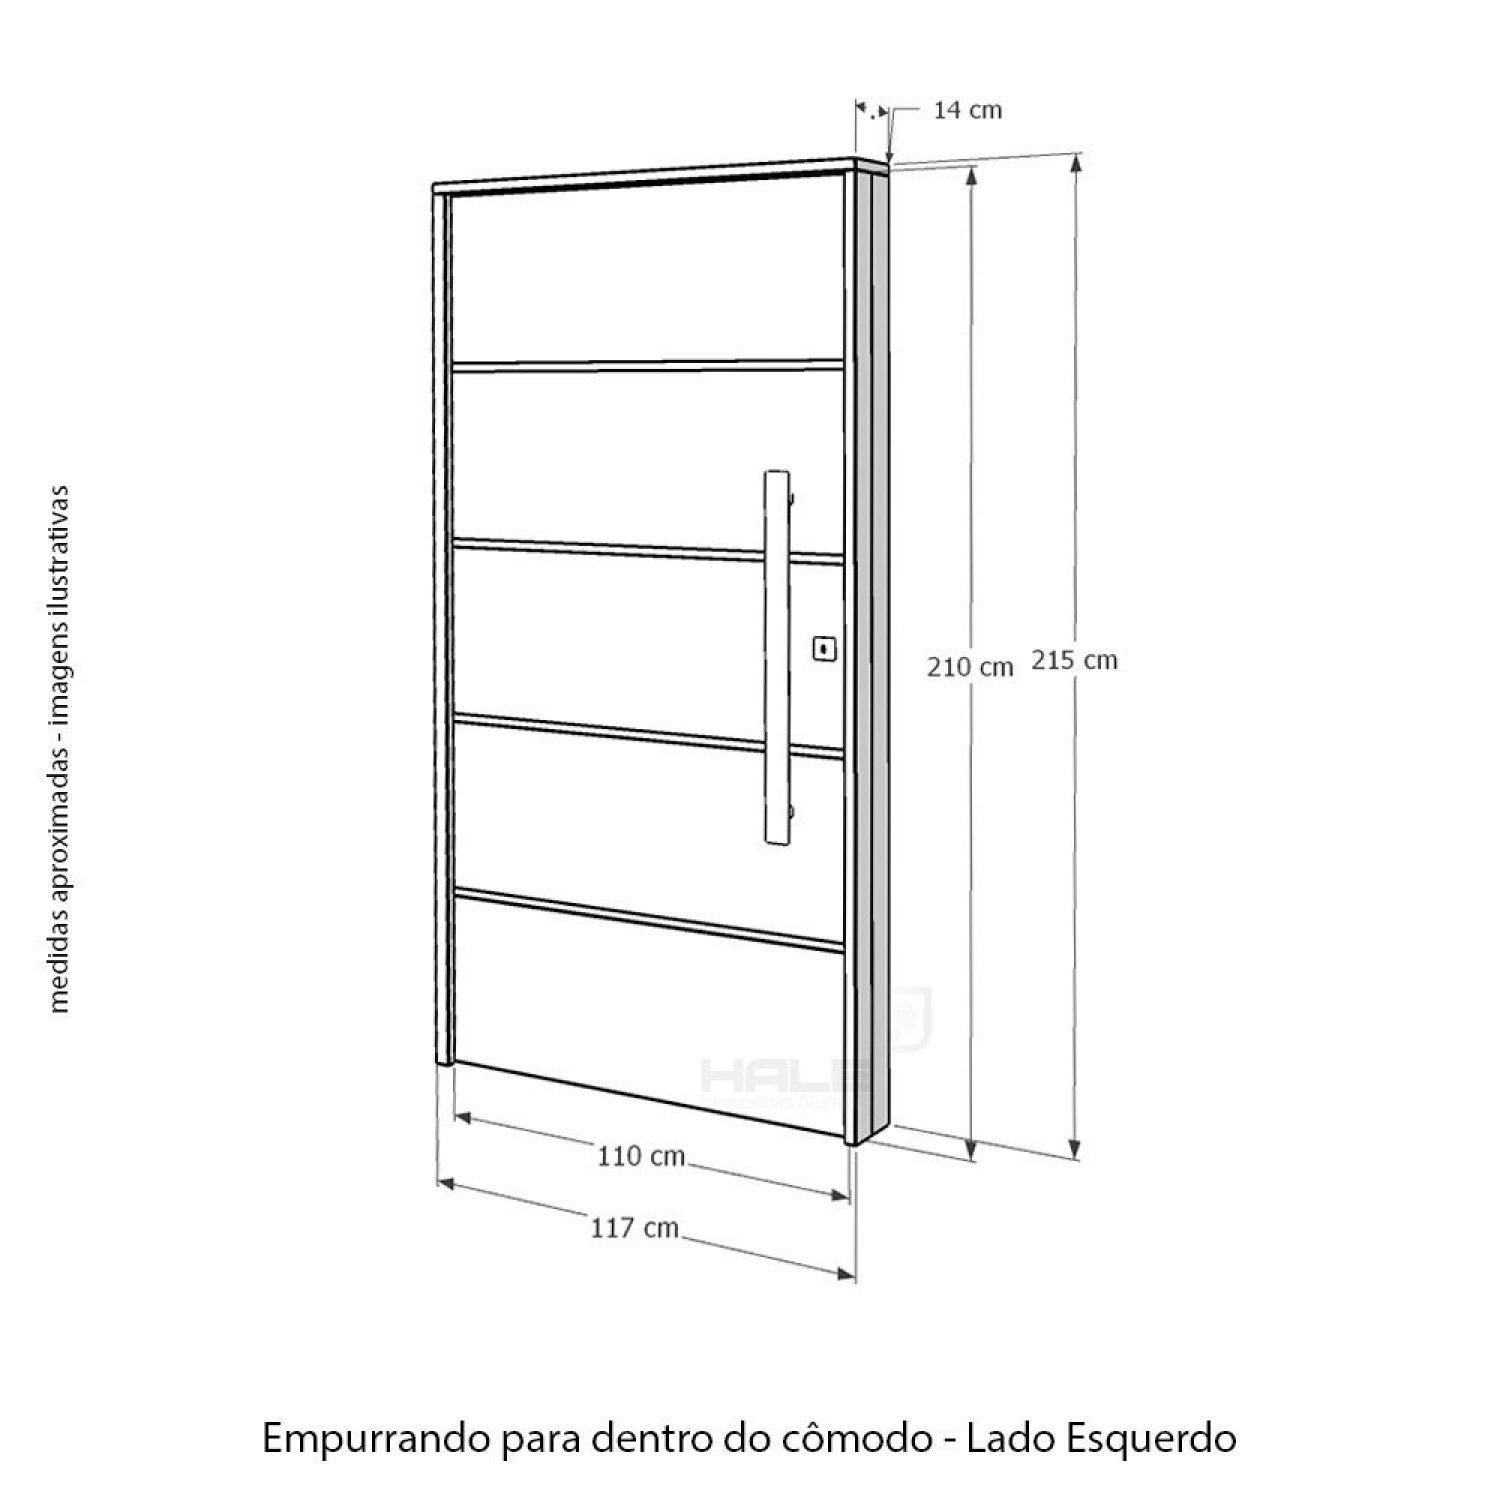 Kit Porta de Madeira com Fechadura Digital 210x110cm Batente 14cm Rodam  - 3